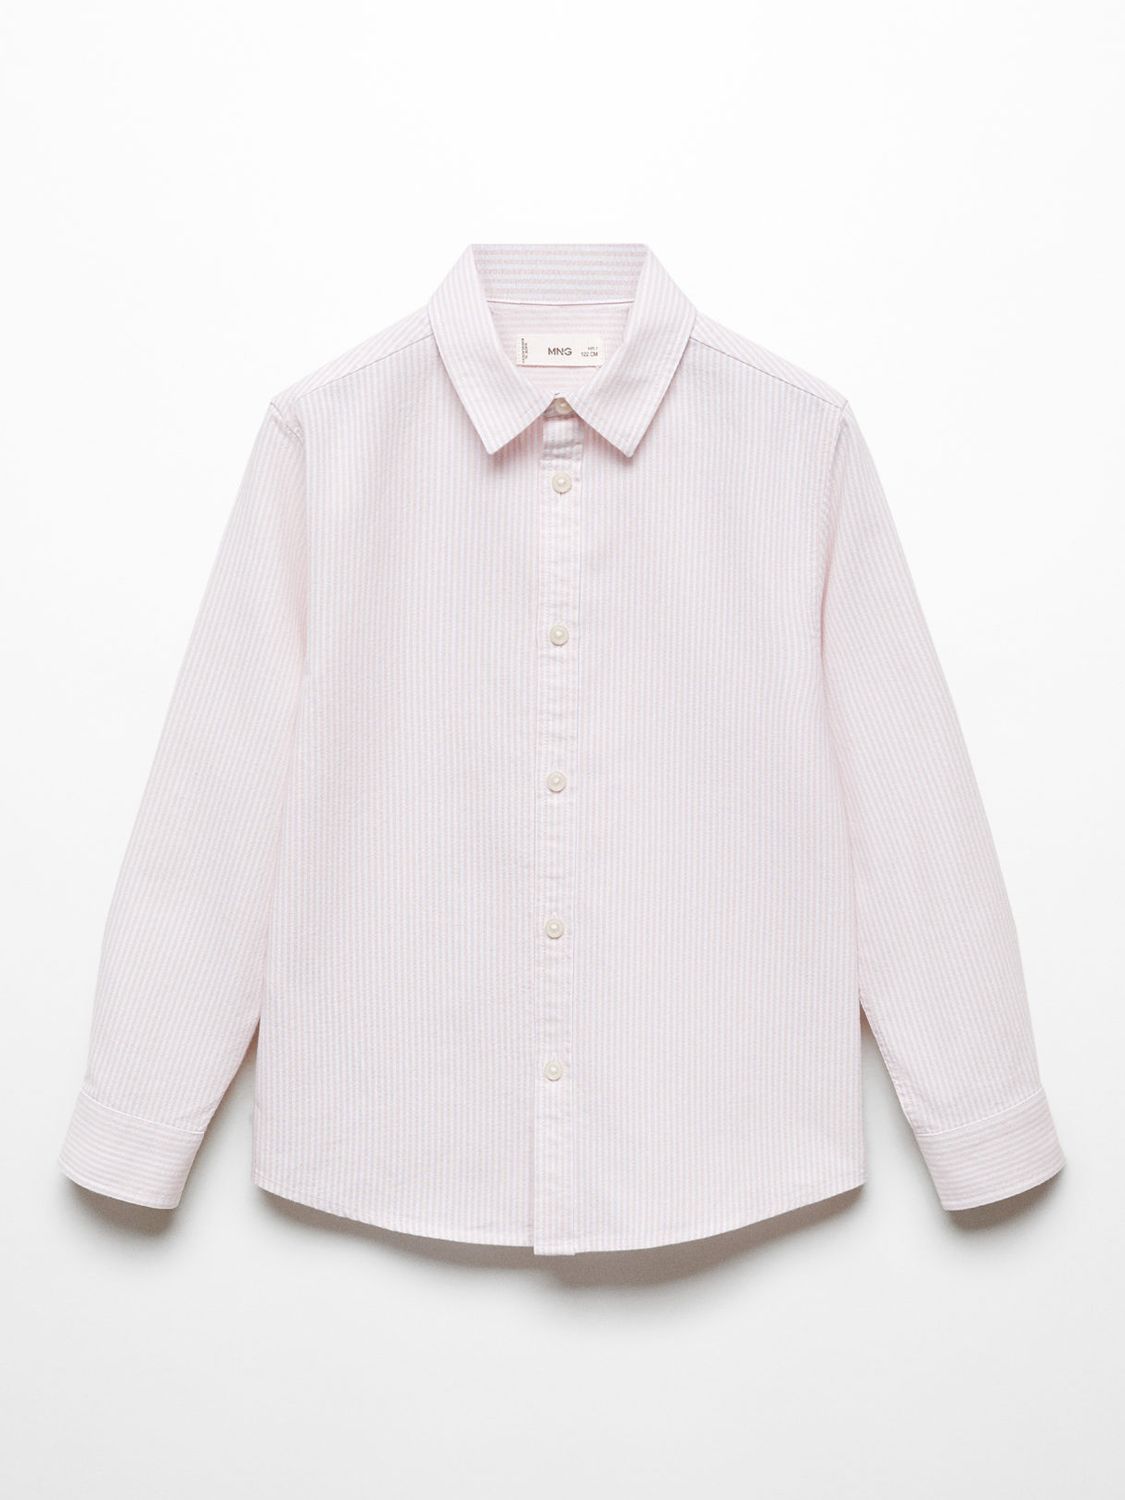 Mango Kids' Regular Fit Cotton Stripe Oxford Shirt, Pink, 5 years